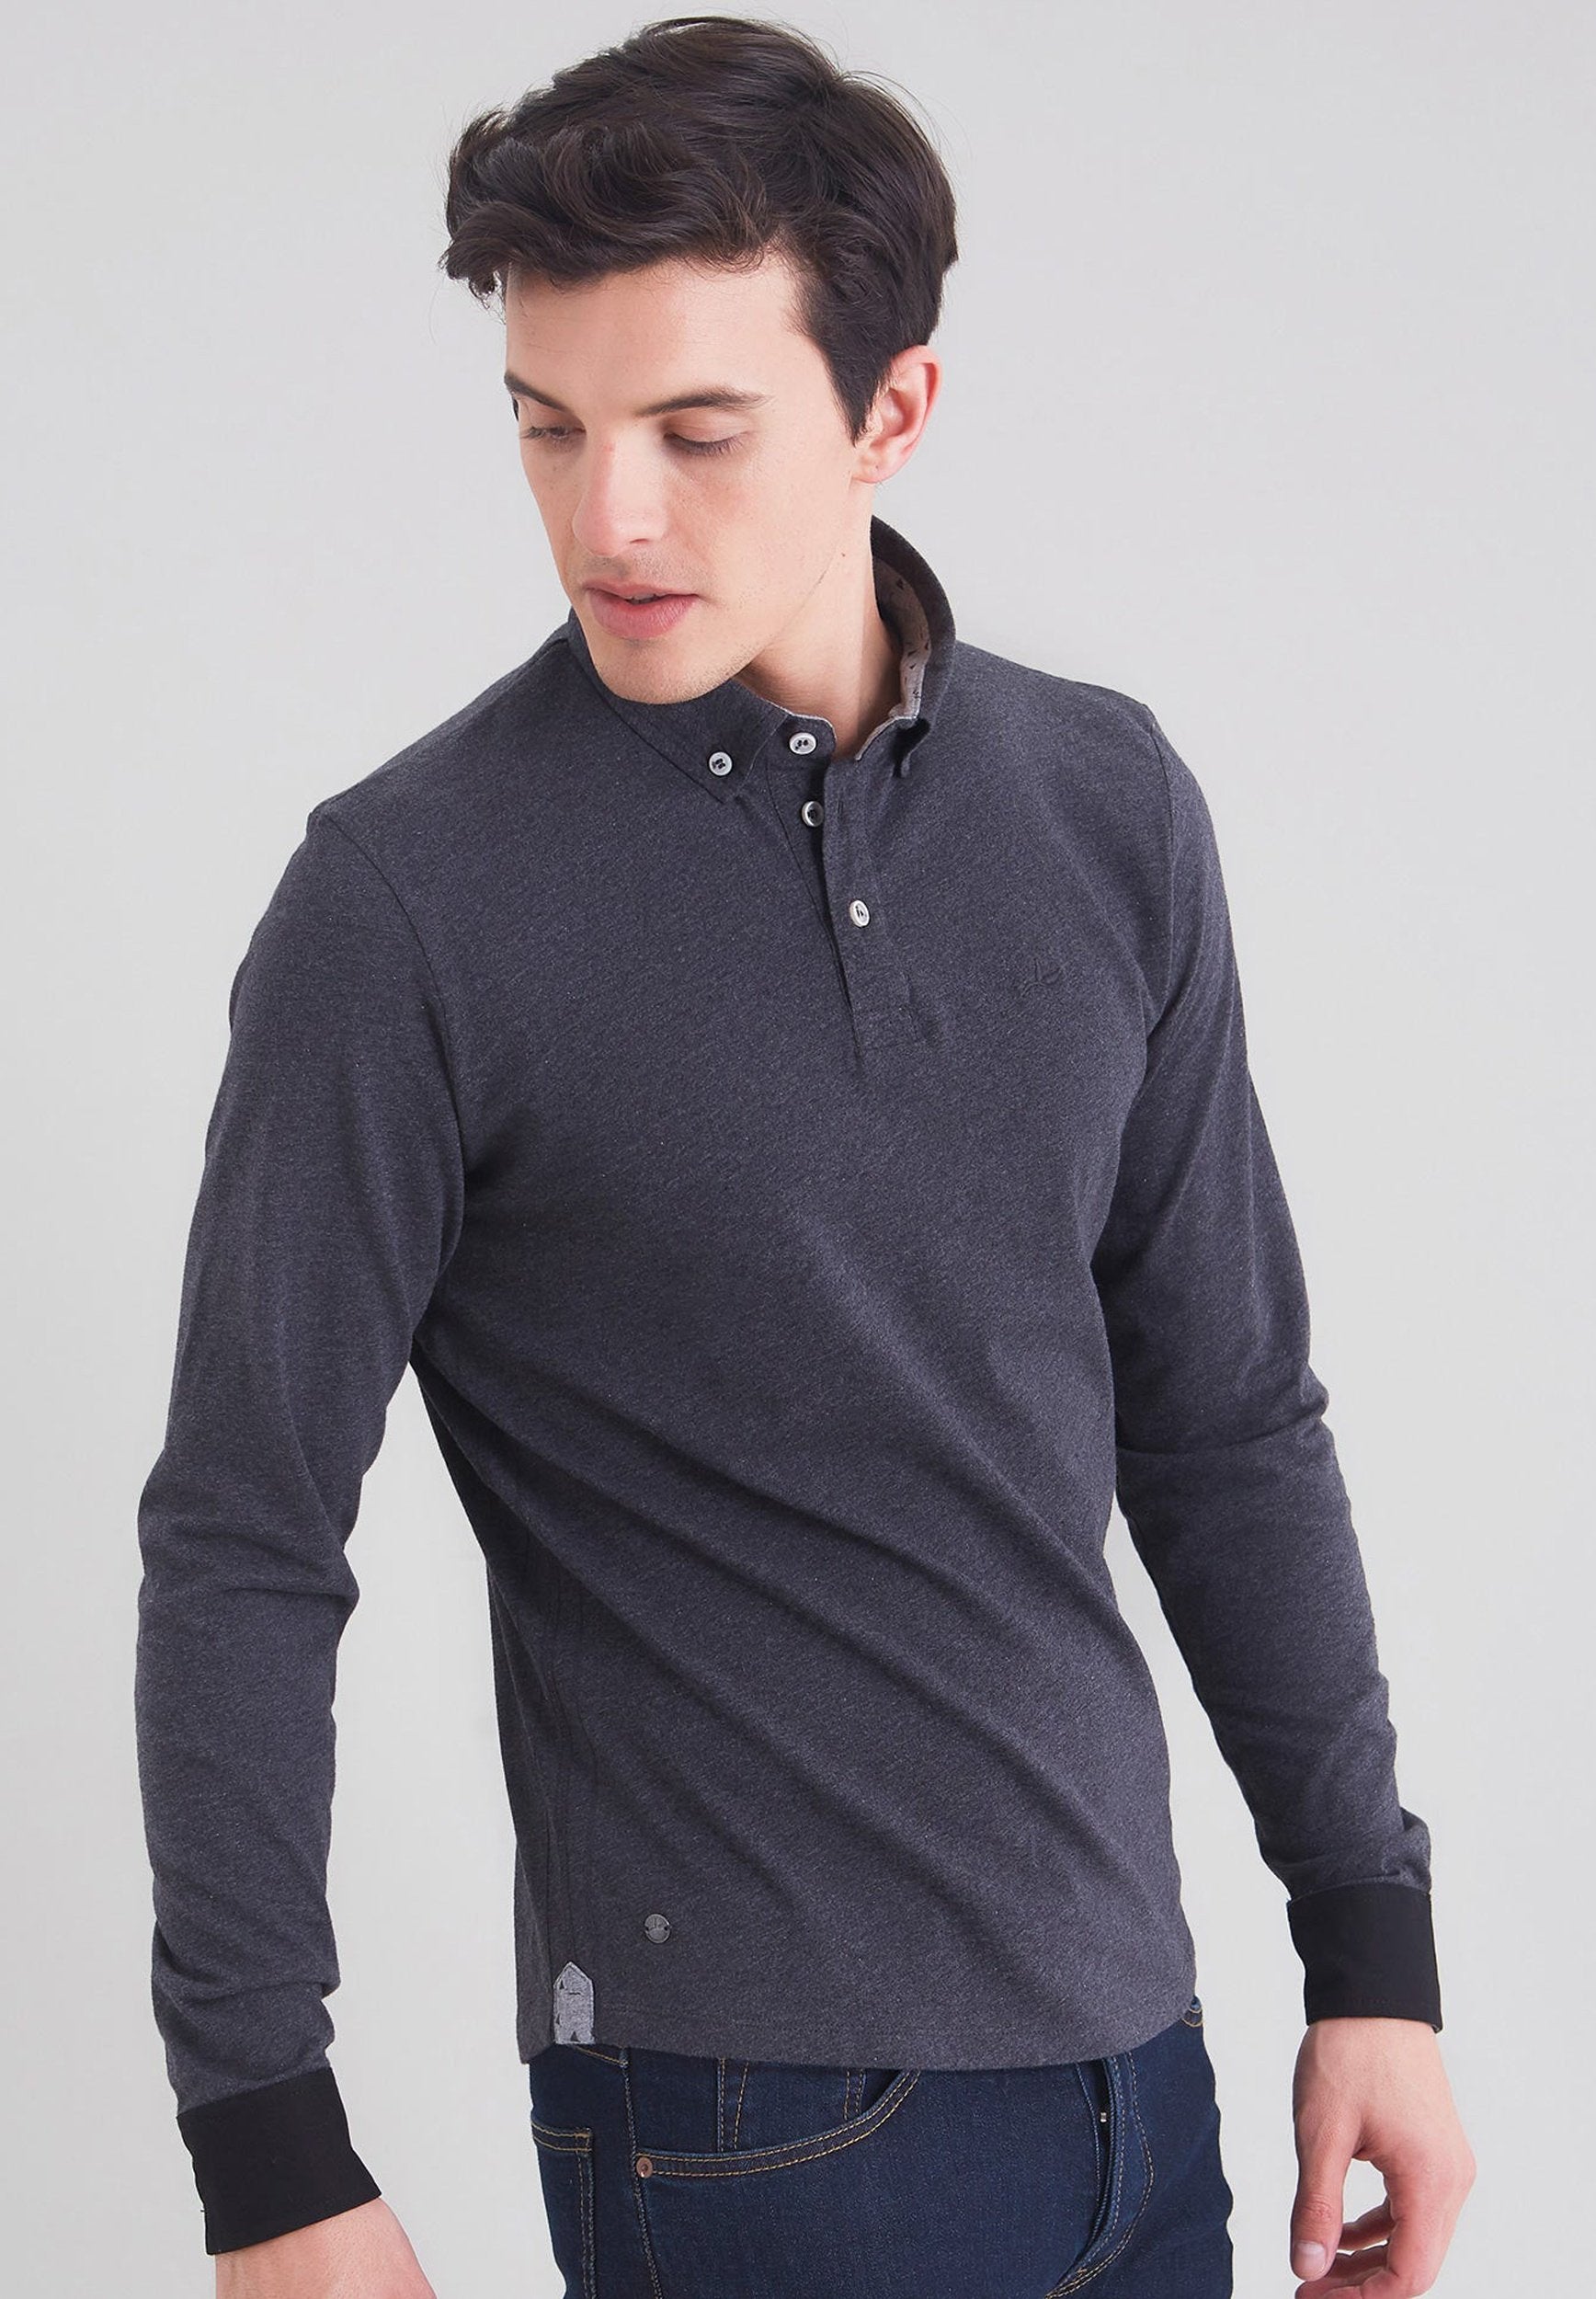 Langarm Poloshirt aus Bio-Baumwolle mit Knopfleiste und kontrast Aermelbund